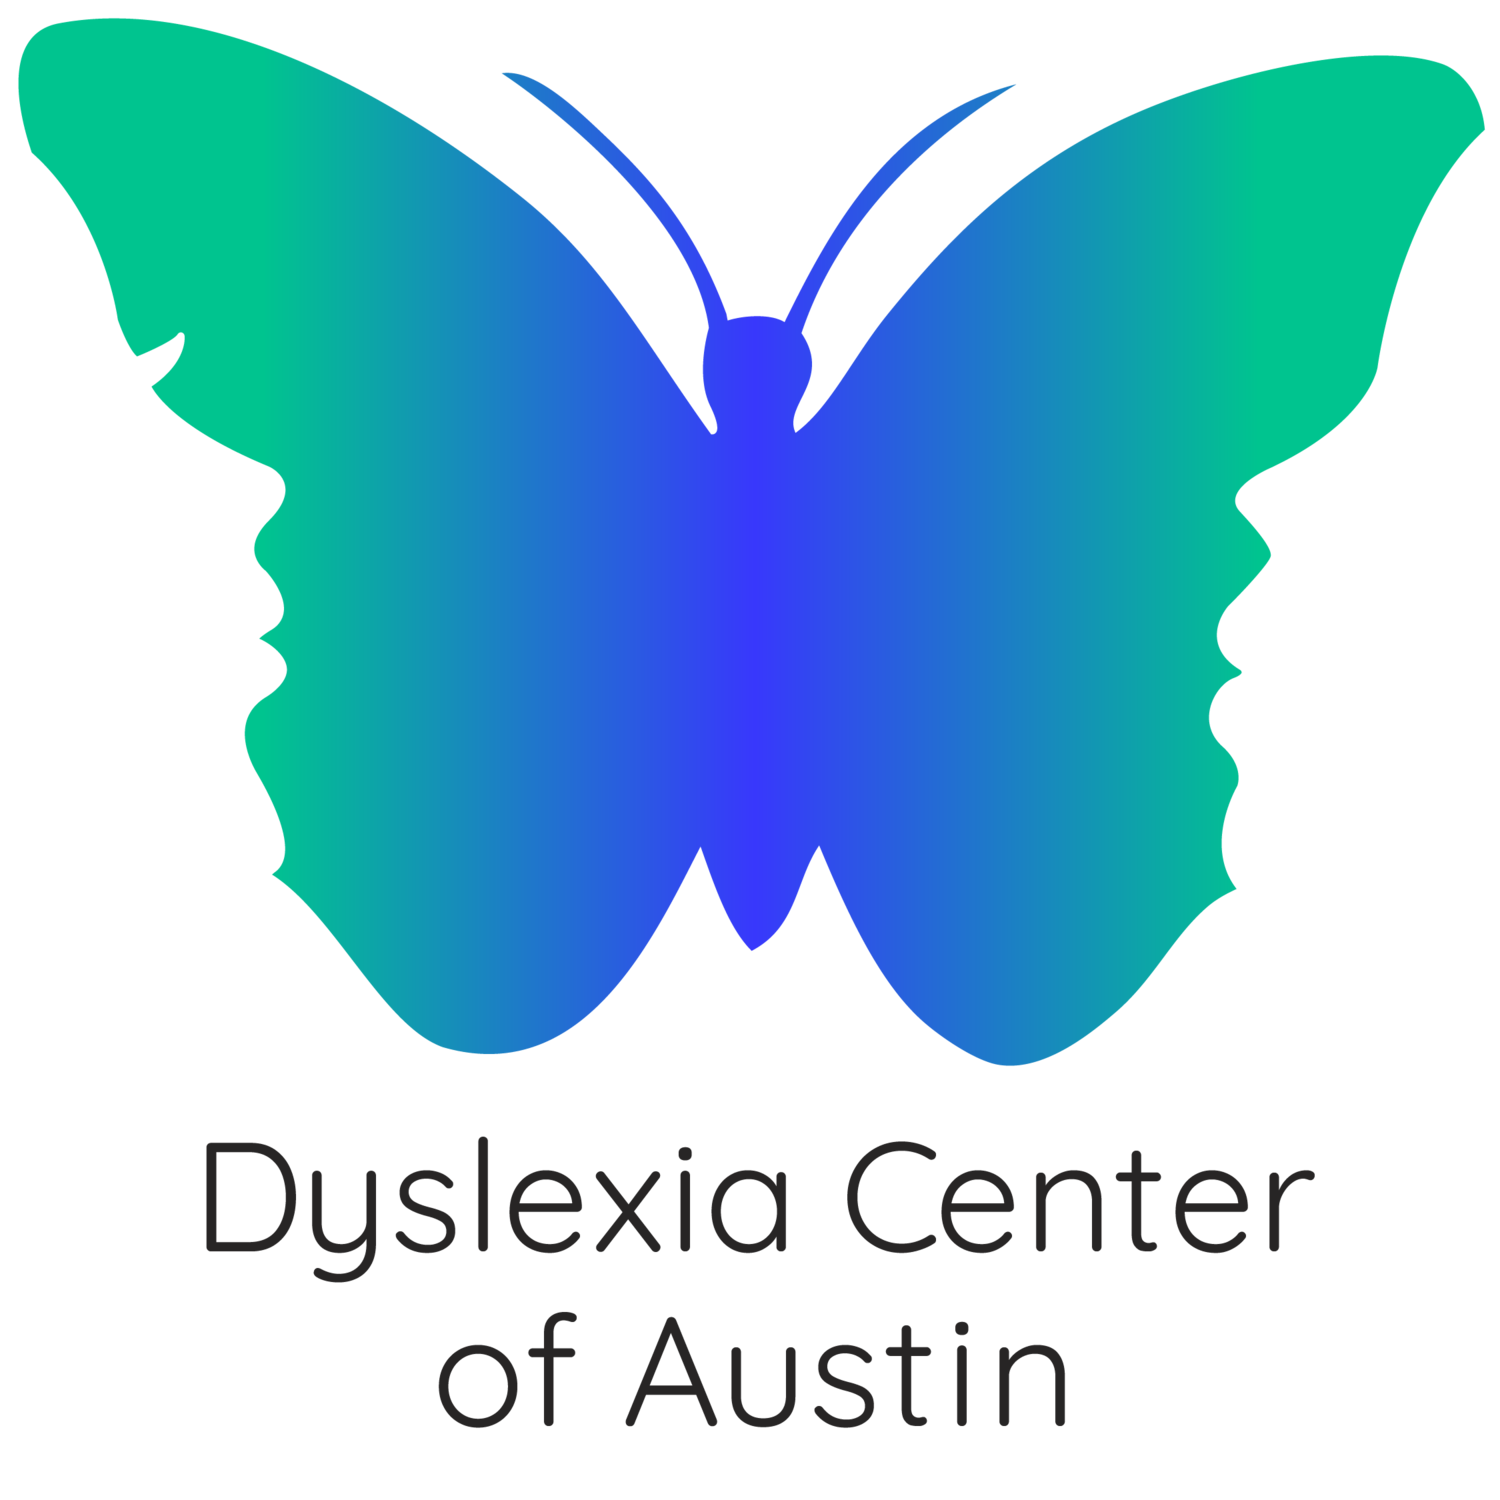 Dyslexia Center of Austin